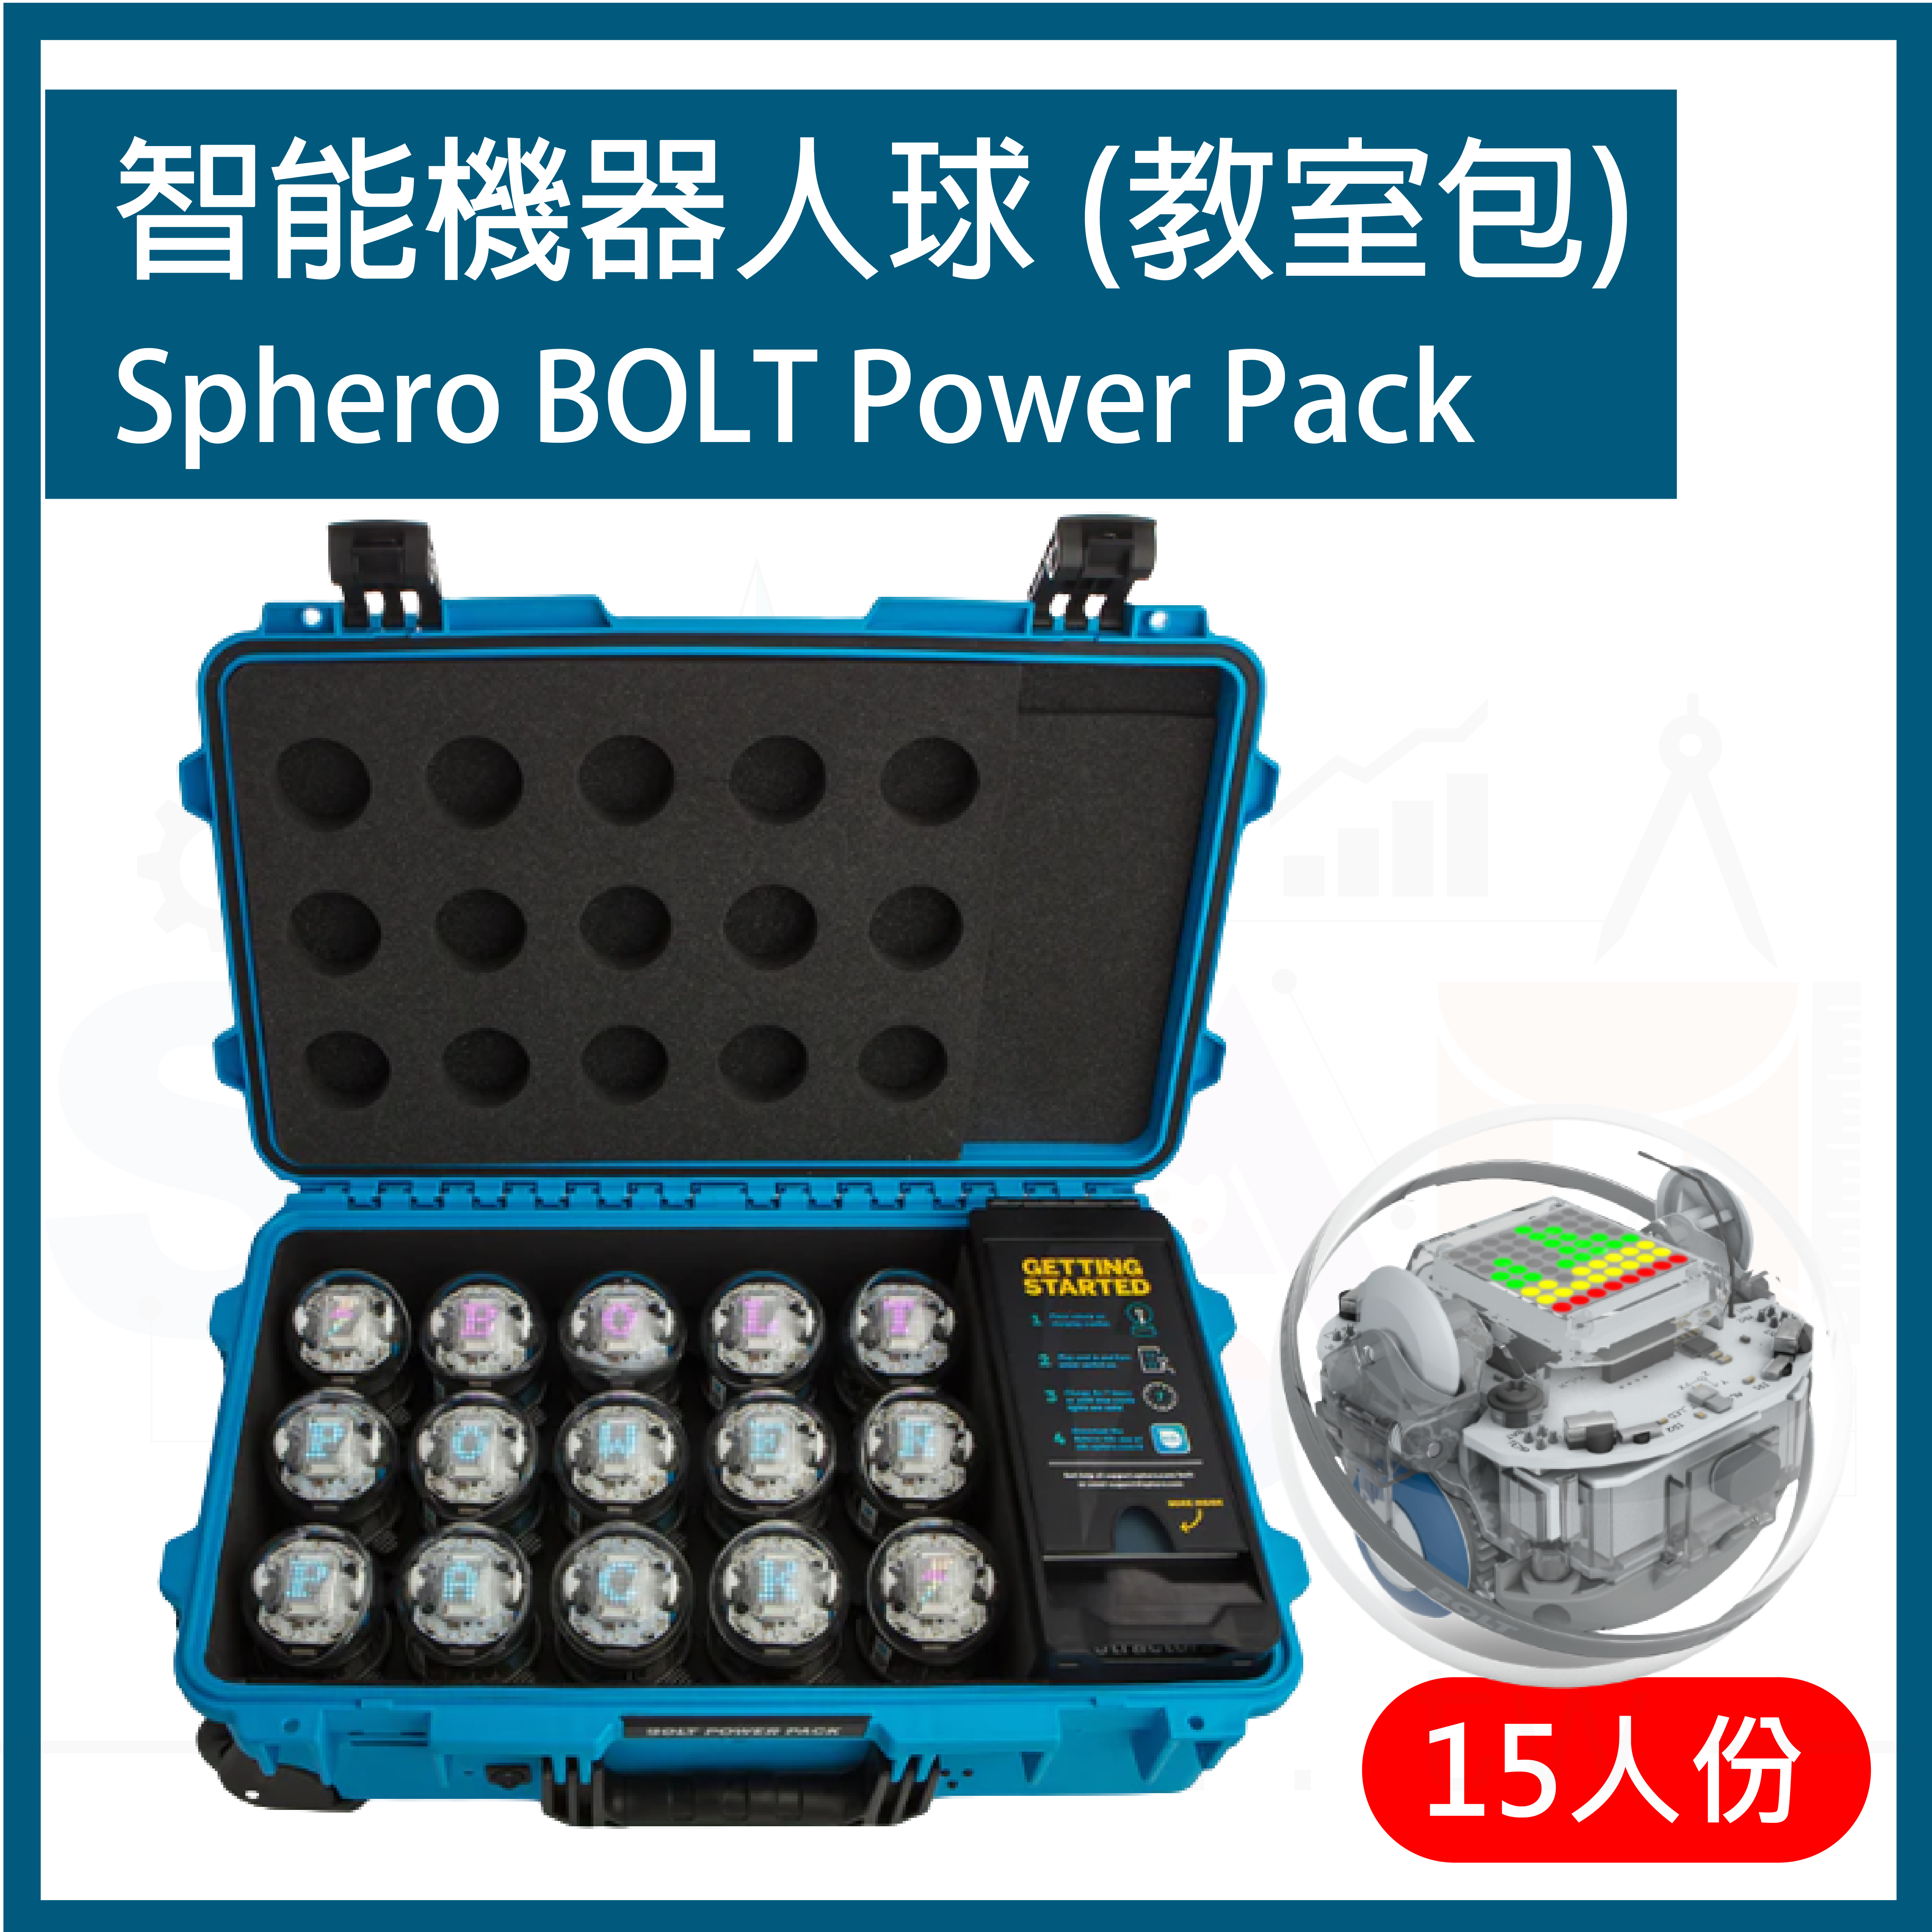 【SPR012】SPHERO BOLT power pack 15人教室工具箱